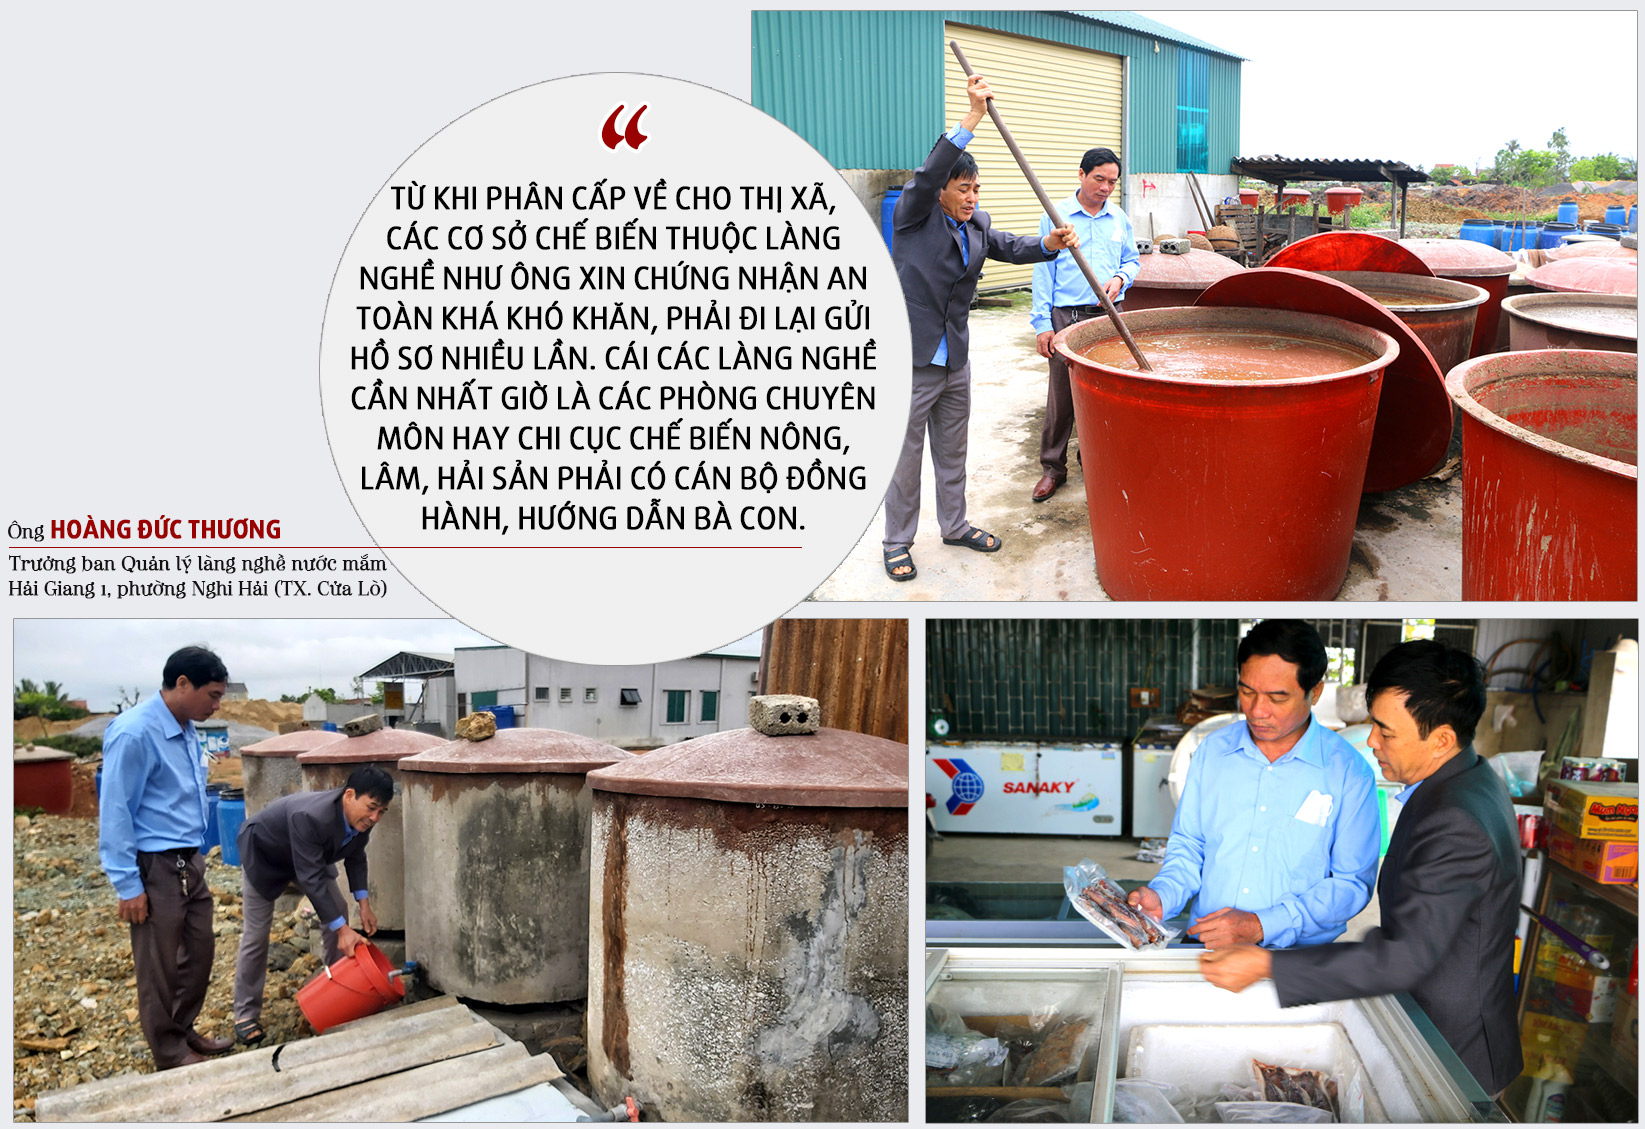 Phần lớn các làng nghệ chế biến nước mắm trên địa bàn Nghệ An áp dụng công nghệ thủ công; Sau khi được cấp đông thì giá trị hải sản tăng gấp đôi. Ảnh: Xuân Hoàng - Nguyễn Hải